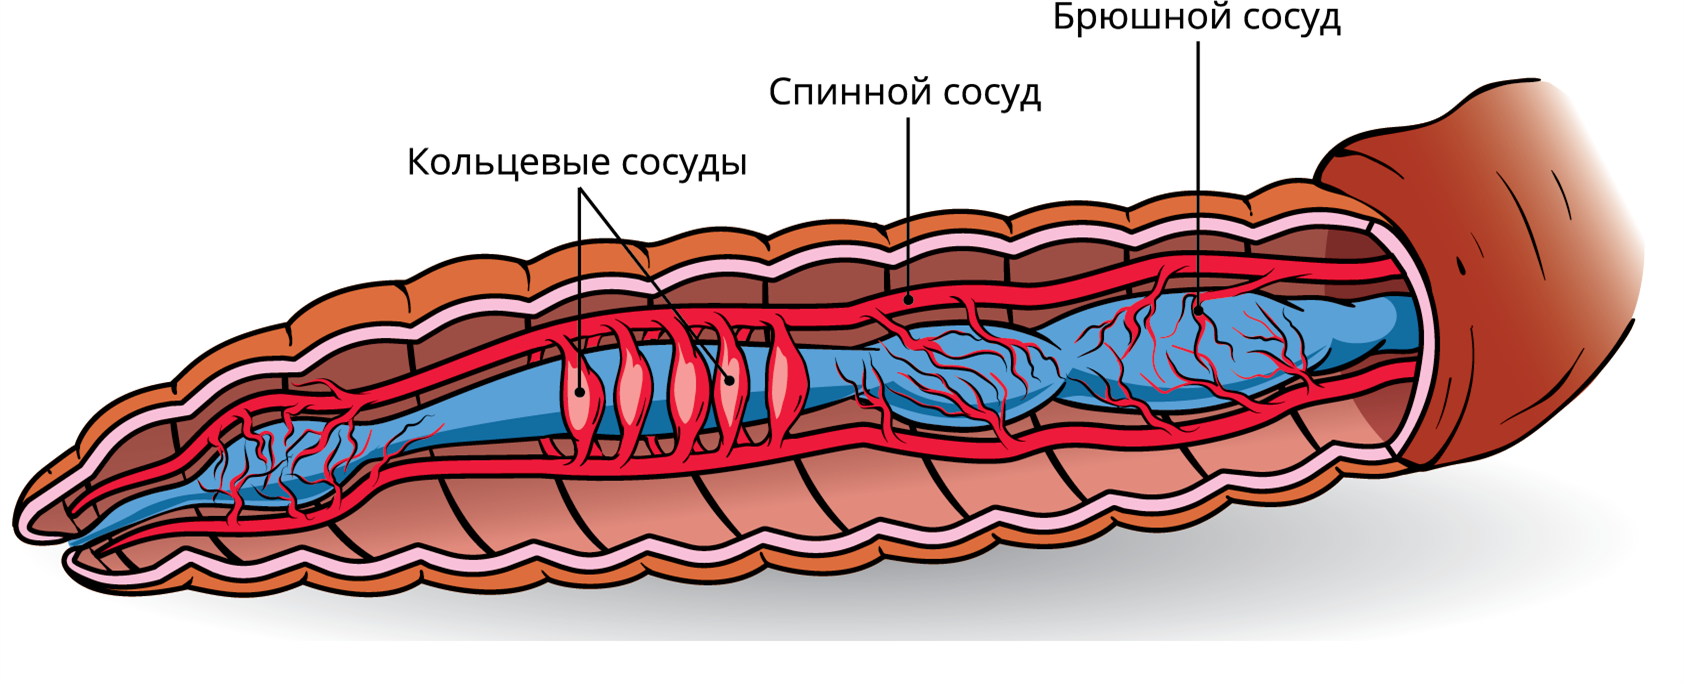 Кольцевые сосуды дождевого червя. Кровеносные сосуды дождевого червя. Кровяная система дождевого червя. Кровеносная дождевого червя. Кровеносная система дождевого червя.